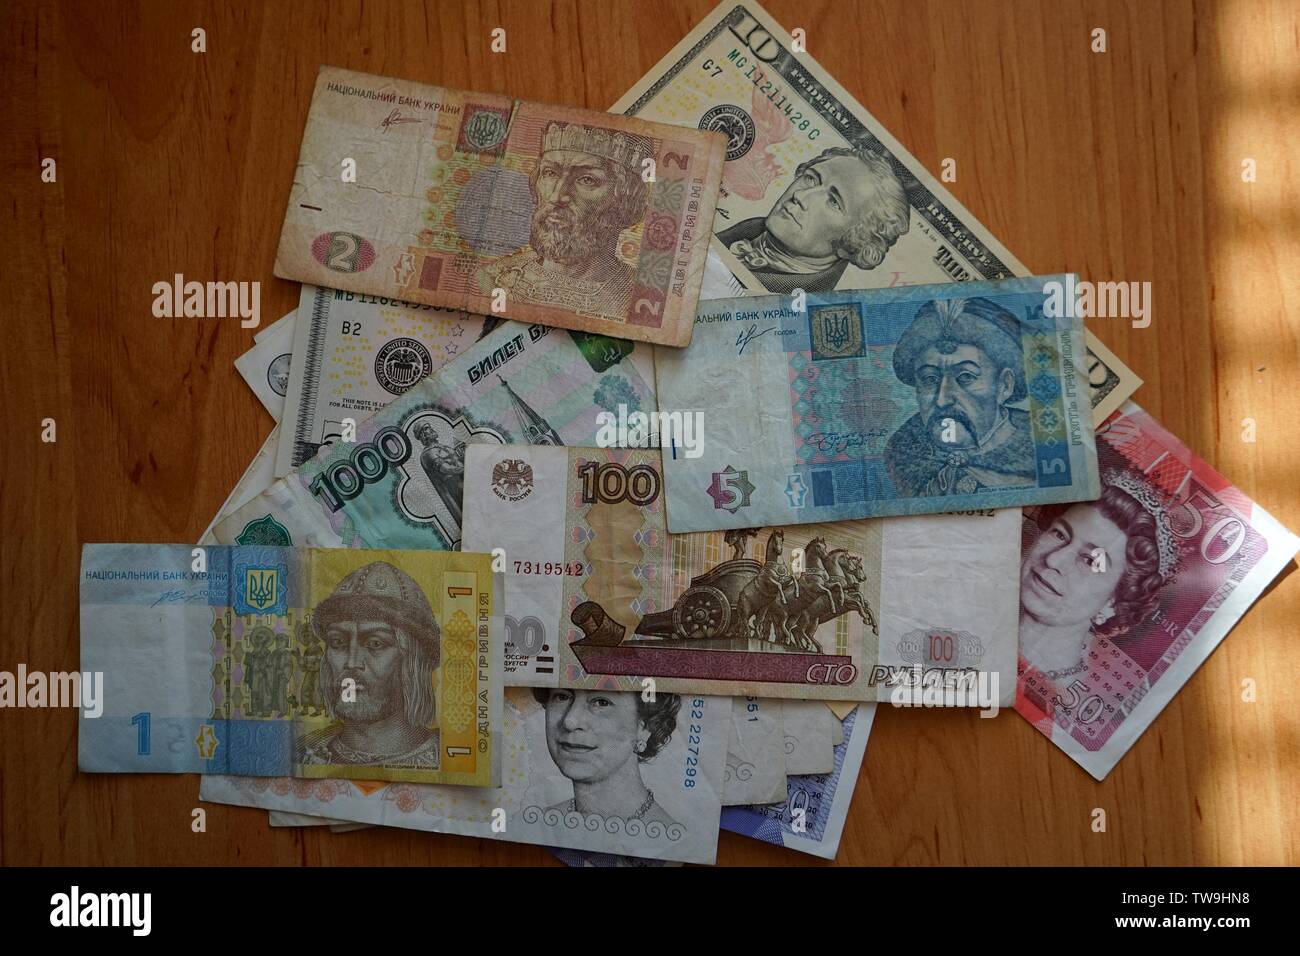 Eine kleine Auswahl der Weltwährungen, Rubel, Euro, Dollar und Pfund. Stockfoto